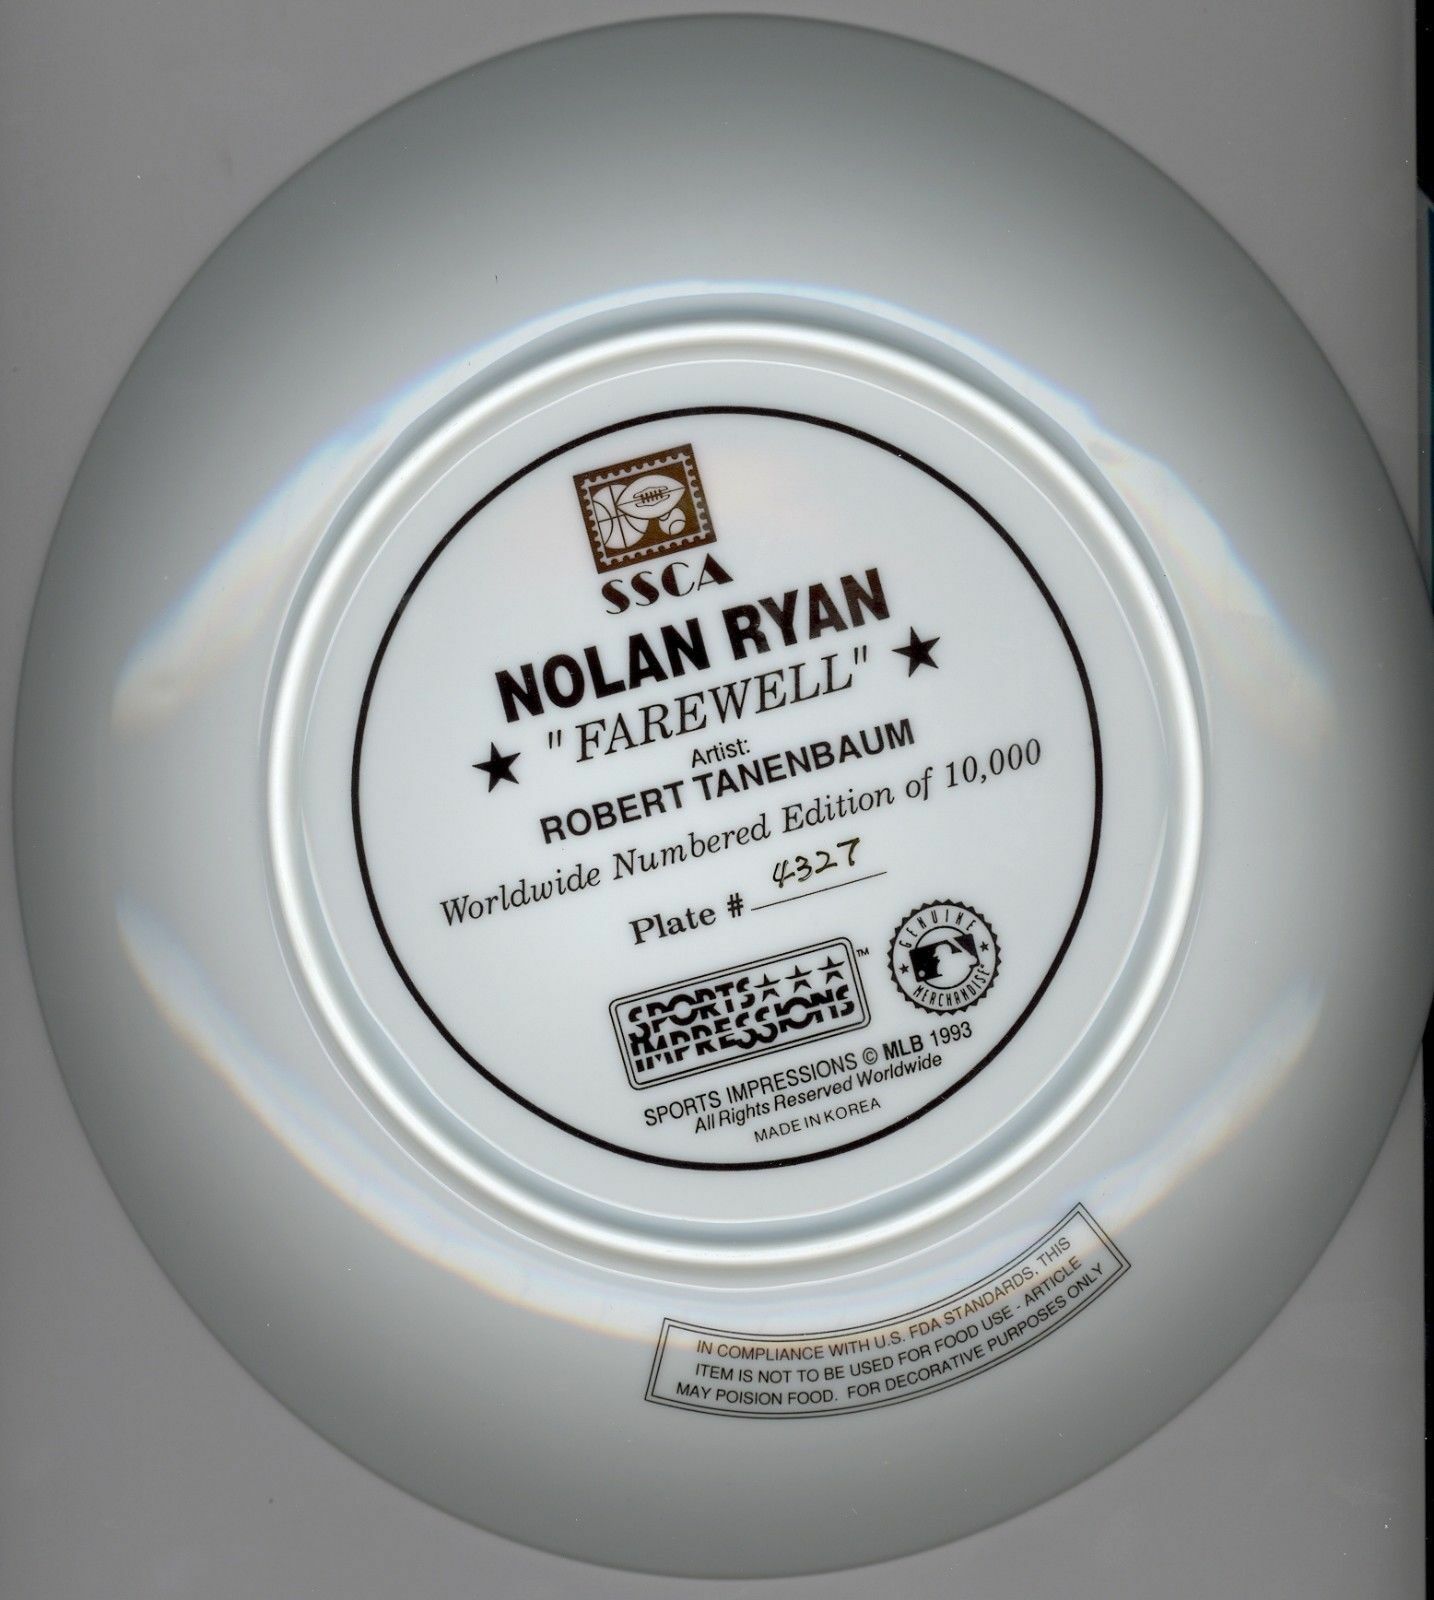 1993 NOLAN RYAN "Farewell" Collectible Gold Edition Plate TEXAS RANGERS MLB COA Image 4